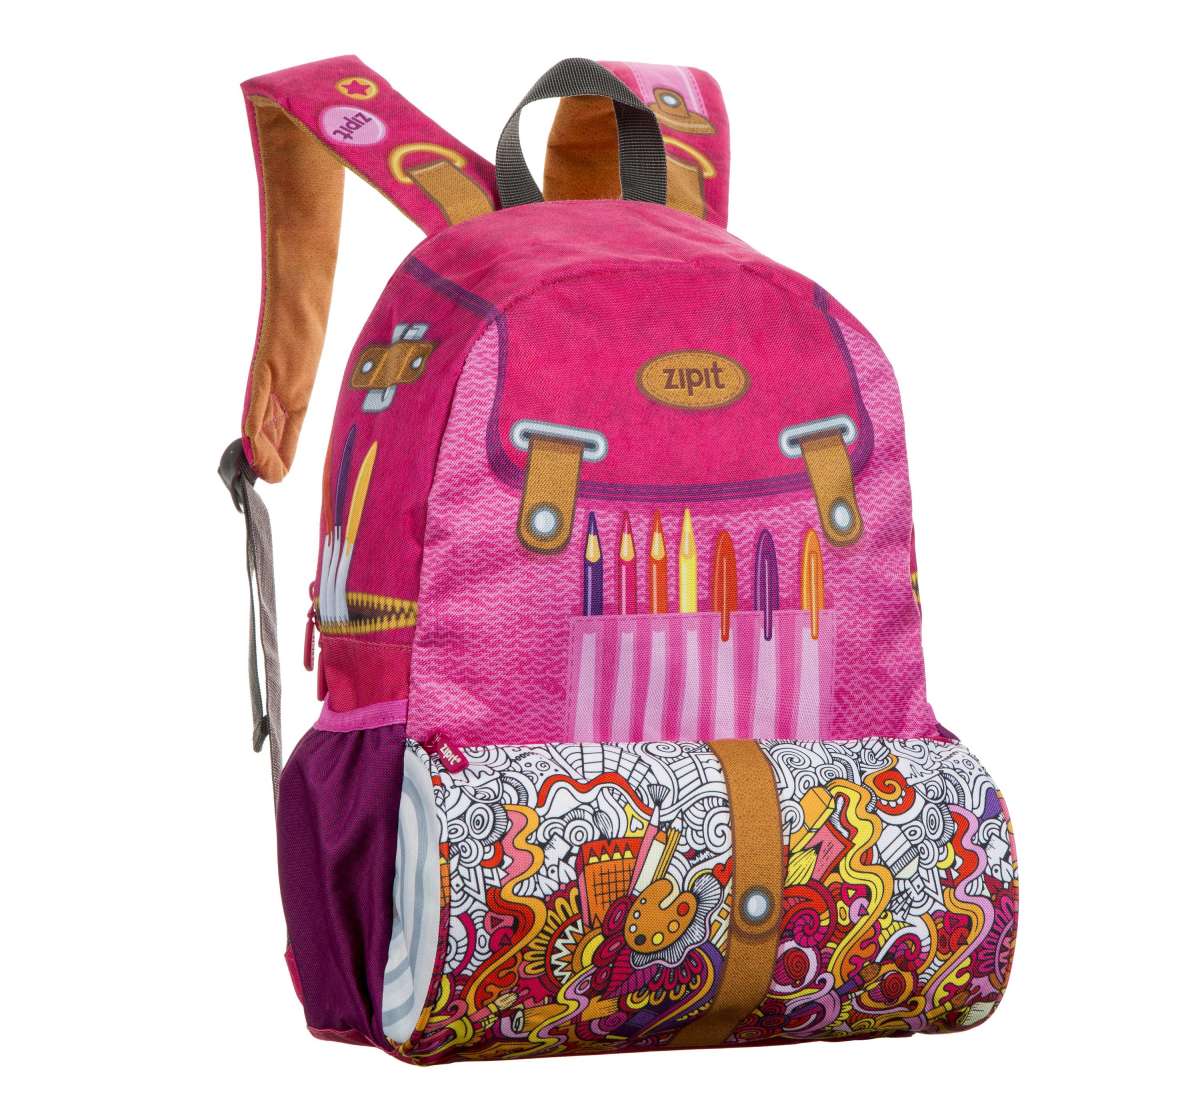 10 coolest school supplies - zipit backpack